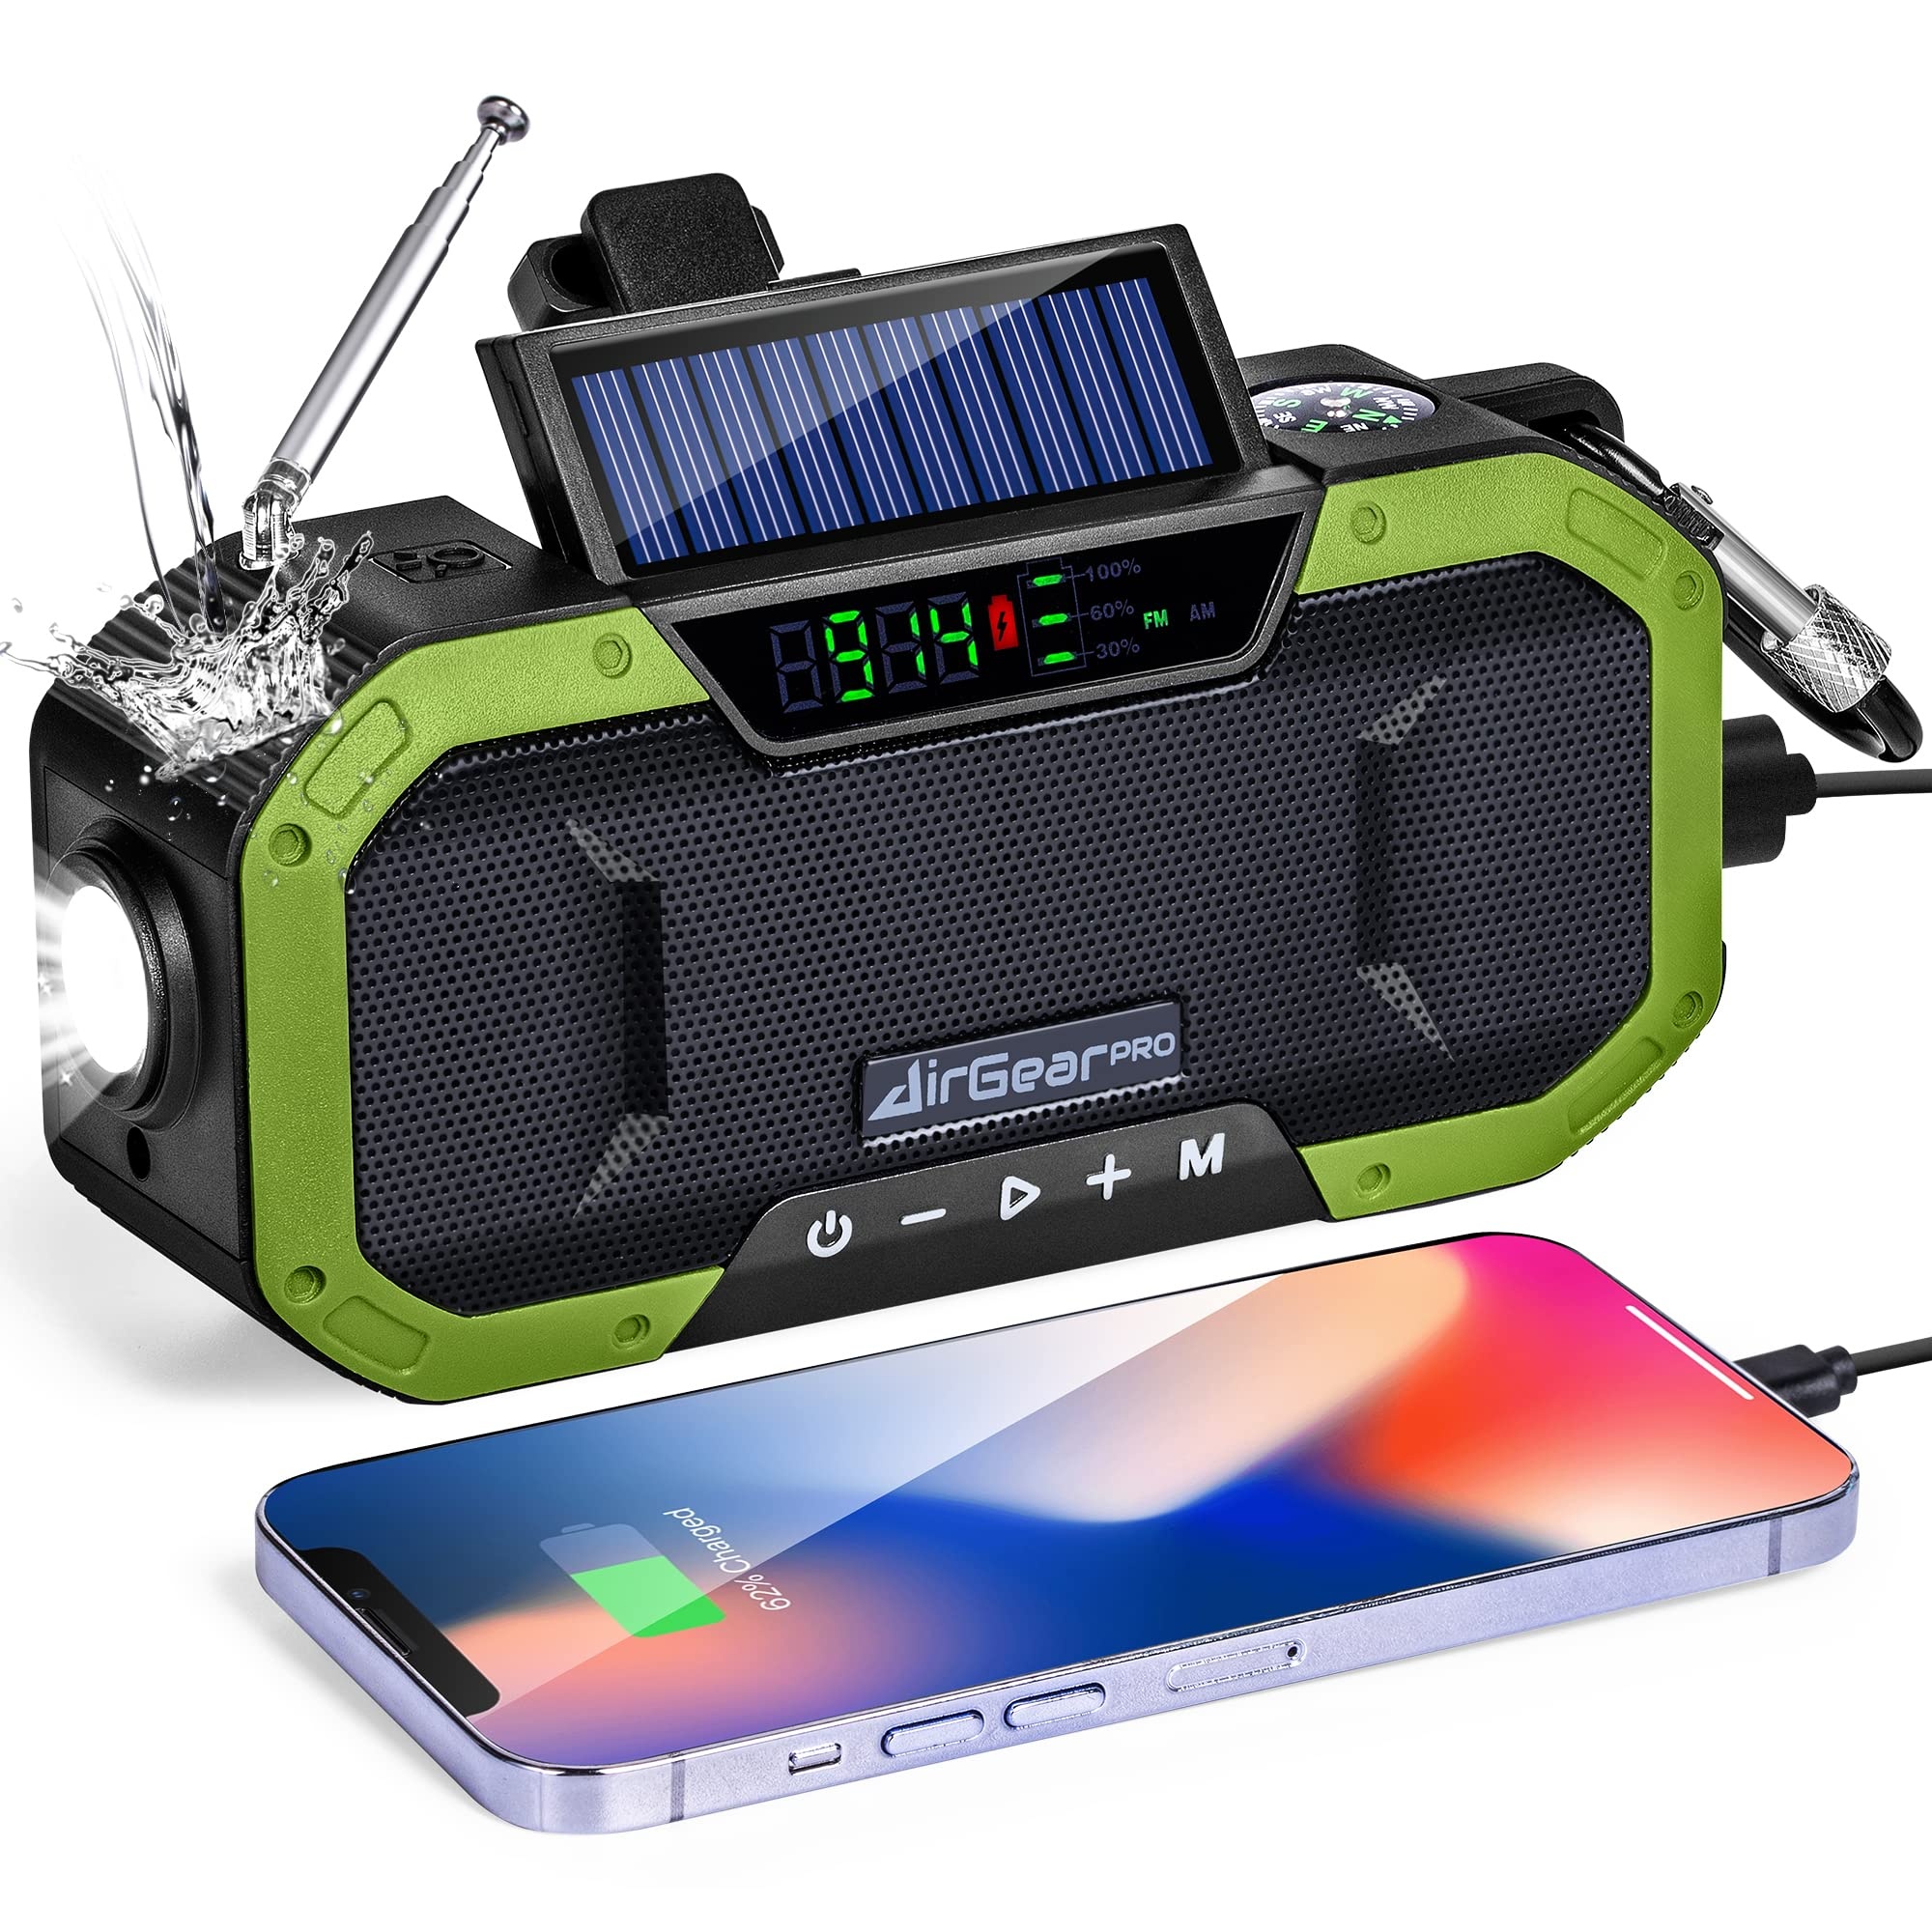 AirGearPro Kurbelradio mit Handyladefunktion Solar, 5000 mAh Powerbank mit USB-Ausgang, FM/AM, Dynamo, IPX5 wasserdicht, LED-Taschenlampe, Notfallradio ideal für Outdoor, Reisen, Wandern